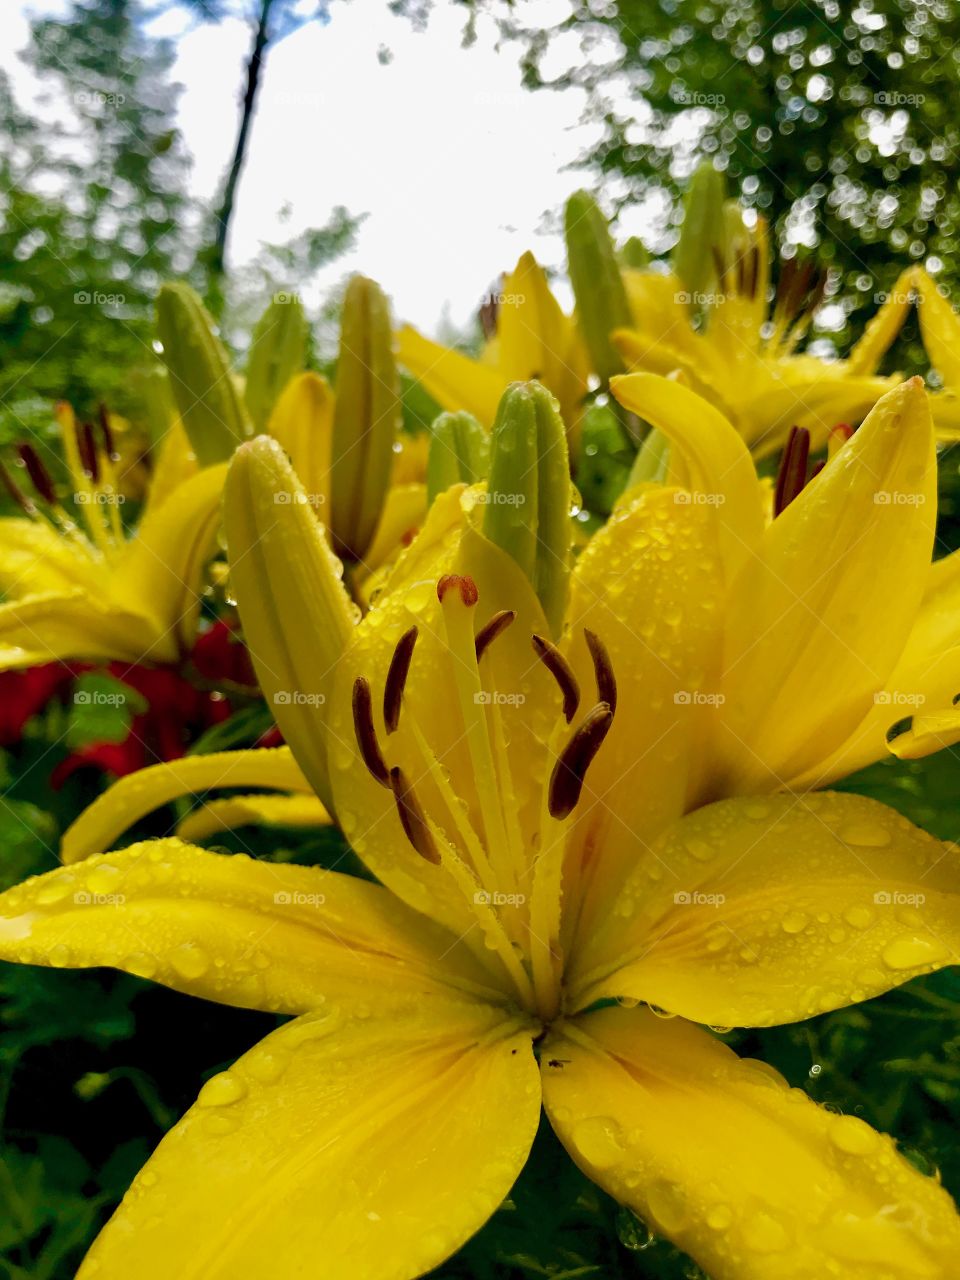 Lilies after a sun shower 